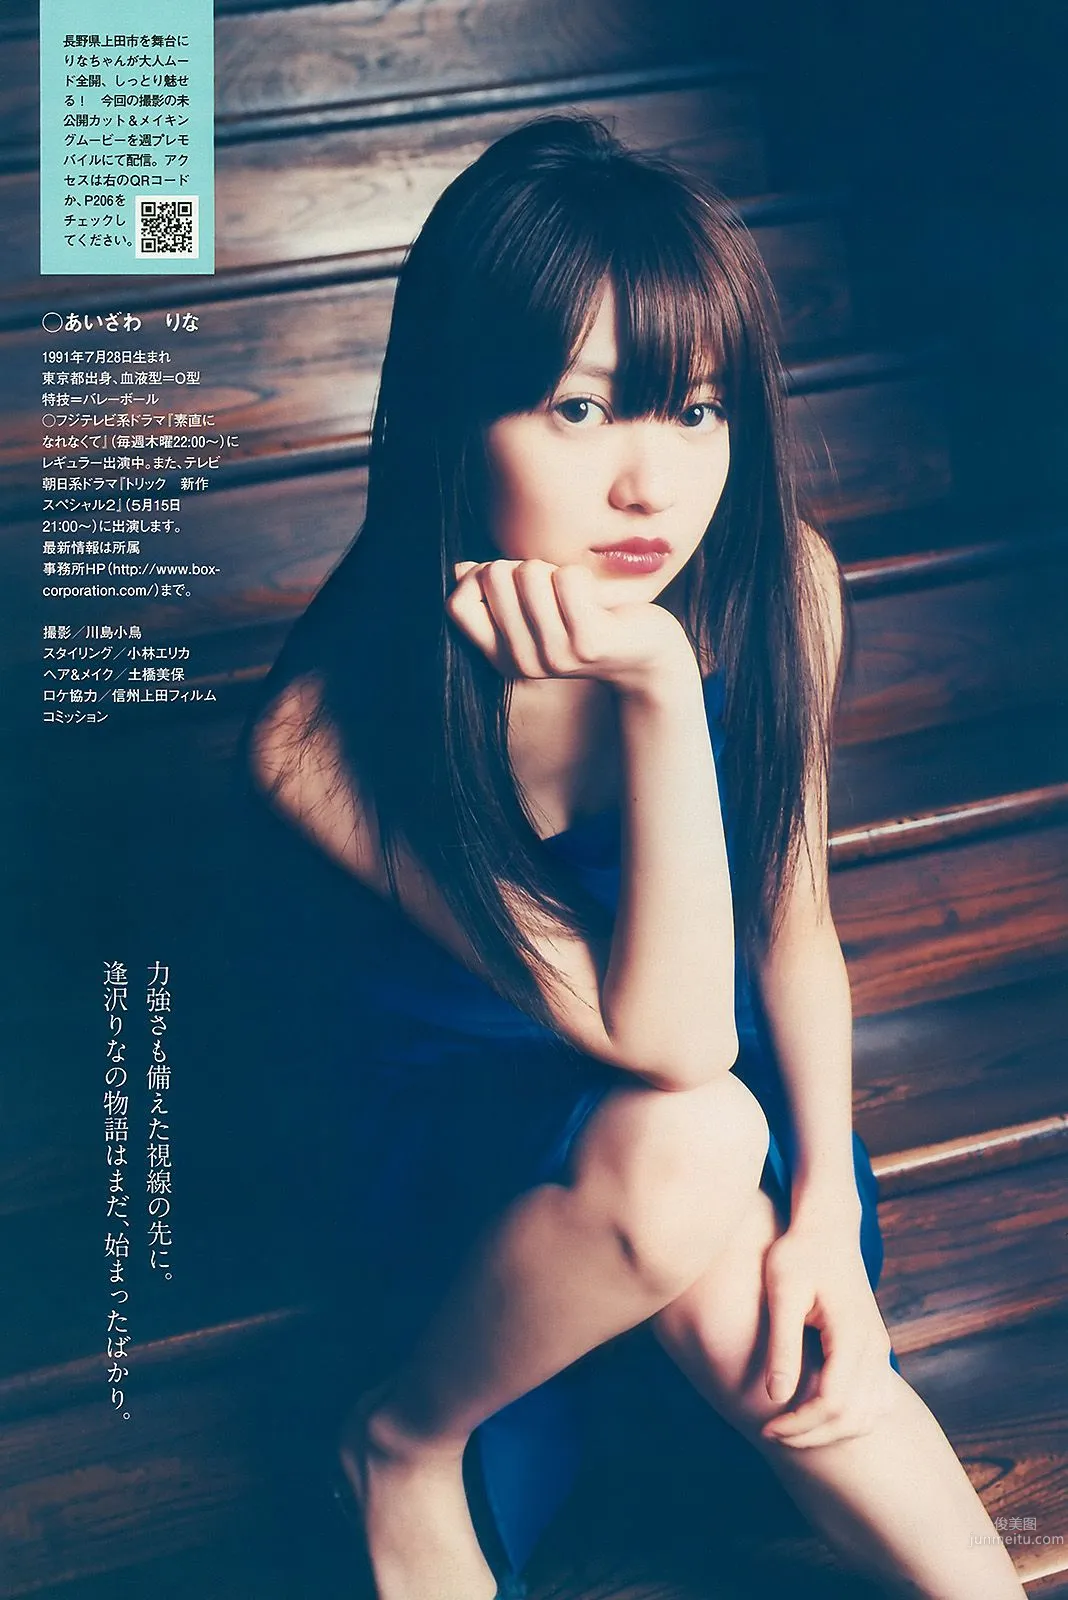 上戸彩 逢沢りな 甲斐まり恵 AKB48 白石美帆 後藤理沙 [Weekly Playboy] 2010年No.19-20 写真杂志14